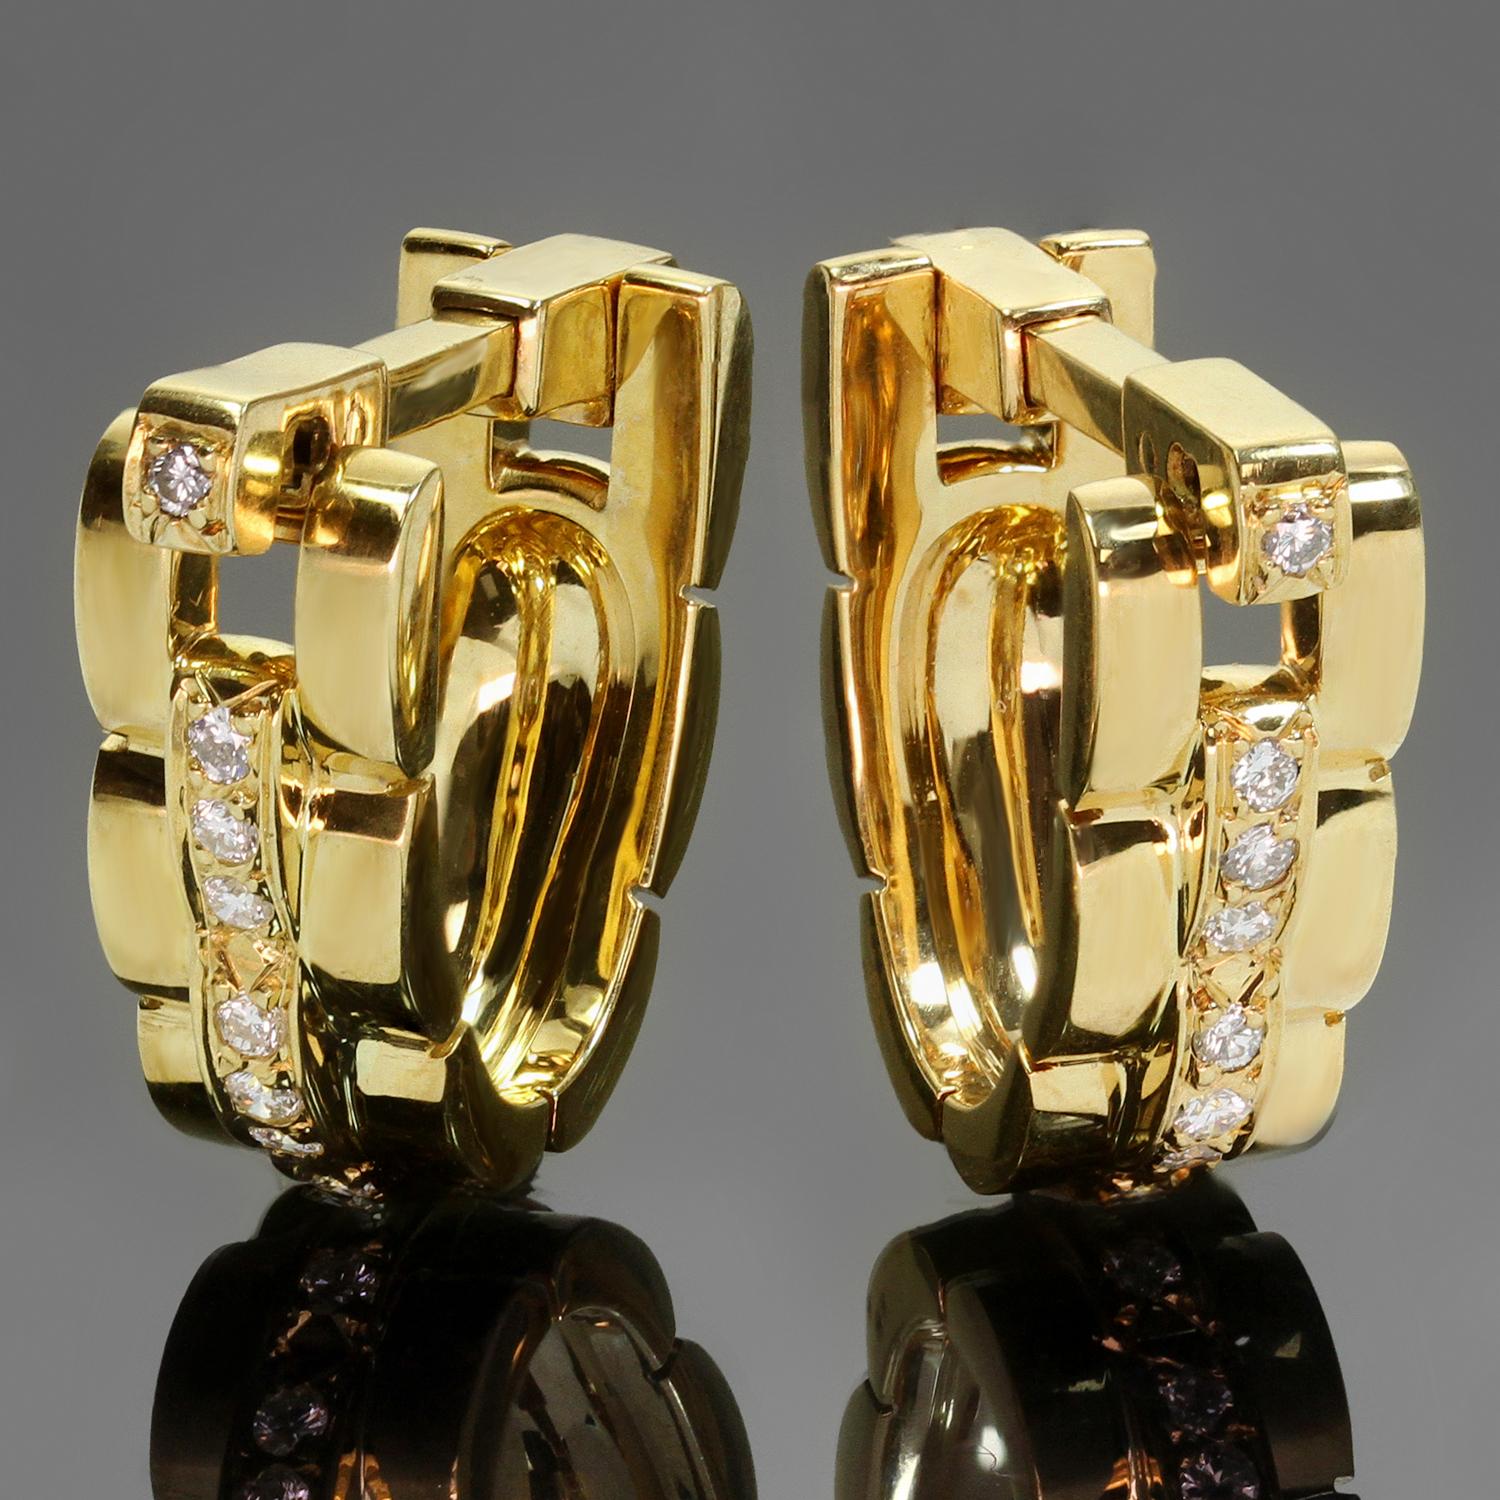 Diese ikonischen Steigbügel-Manschettenknöpfe aus der klassischen Kollektion Maillon Panthere von Cartier sind aus 18 Karat Gelbgold gefertigt und mit E-F VVS2-VS1-Diamanten mit einem geschätzten Gewicht von 0,60 Karat besetzt. Hergestellt in